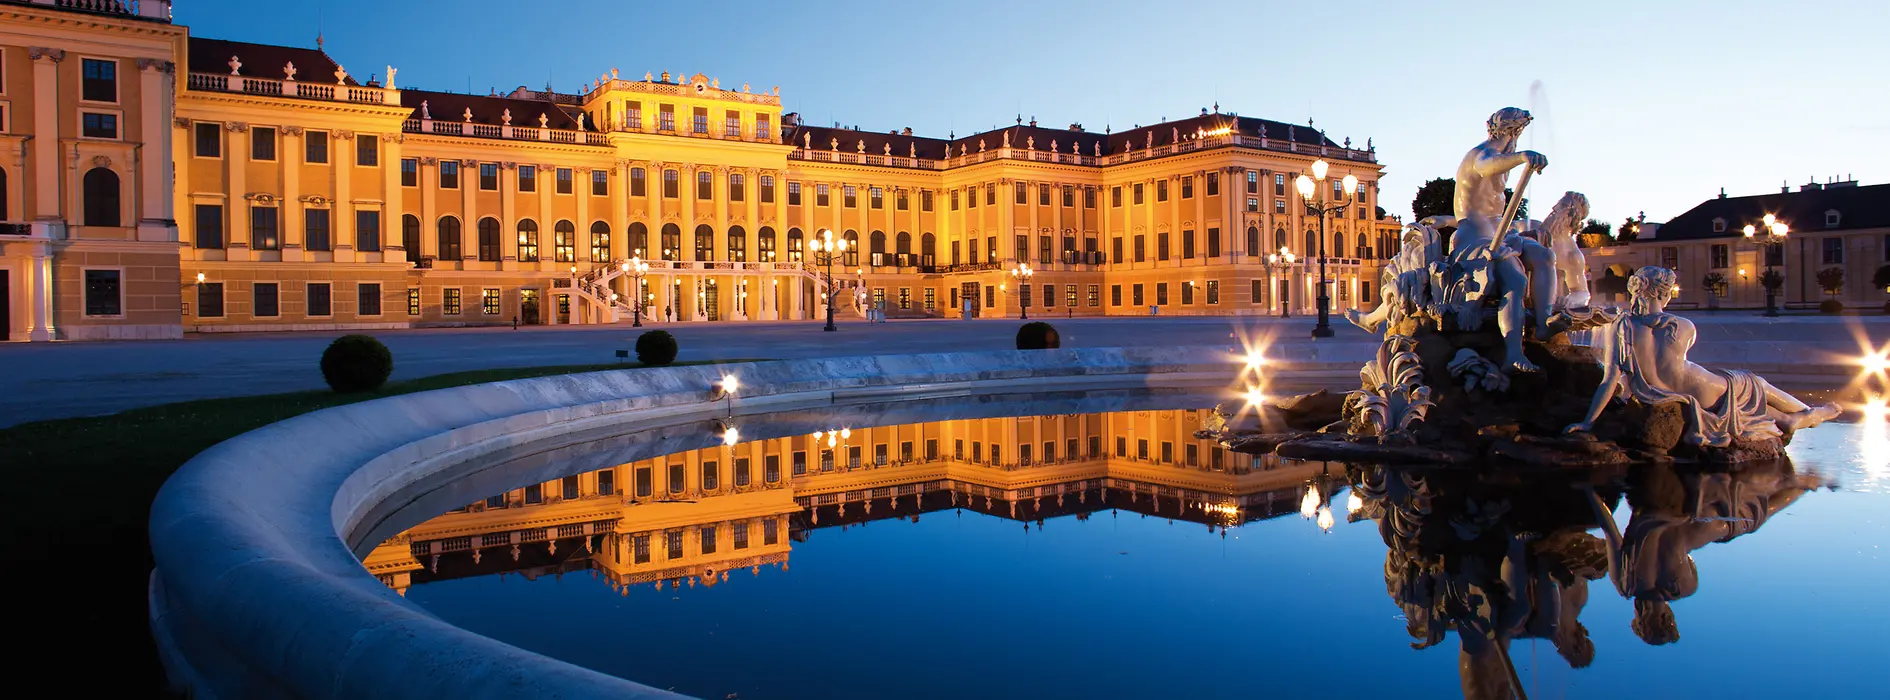 Palatul Schönbrunn noaptea